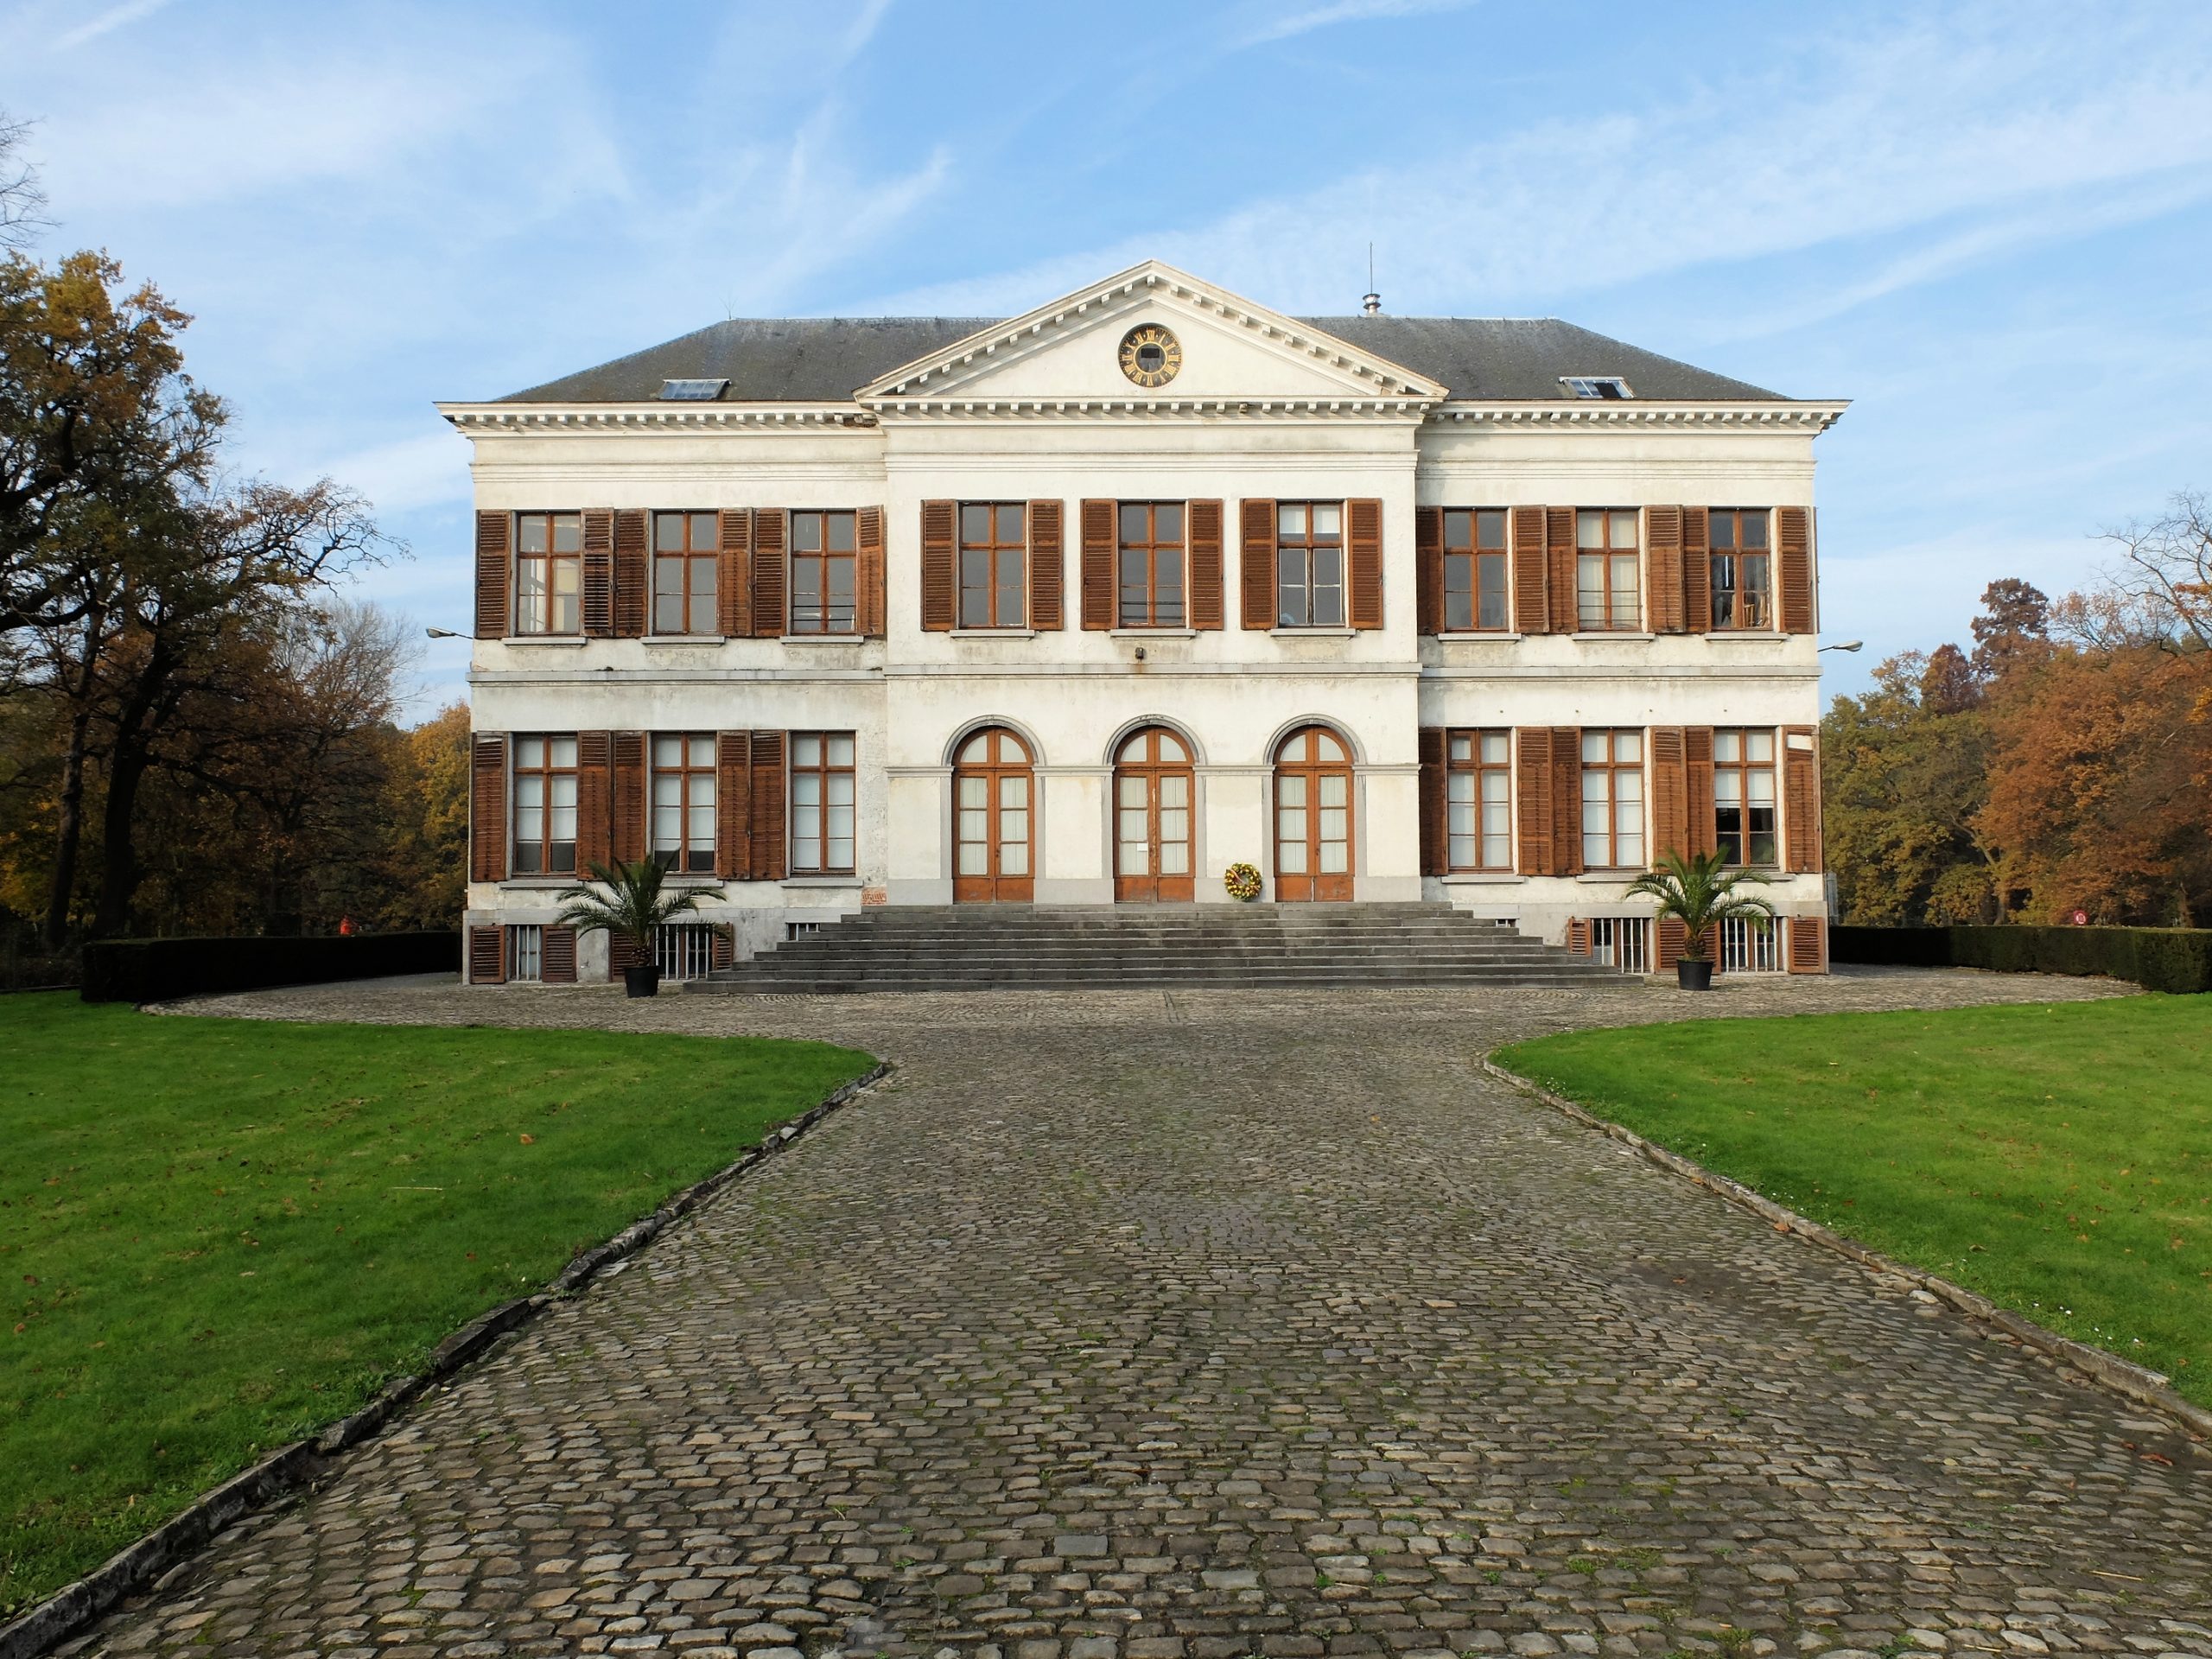 Cimetière Schoonselhof - Endroit insolite à Anvers, en Belgique